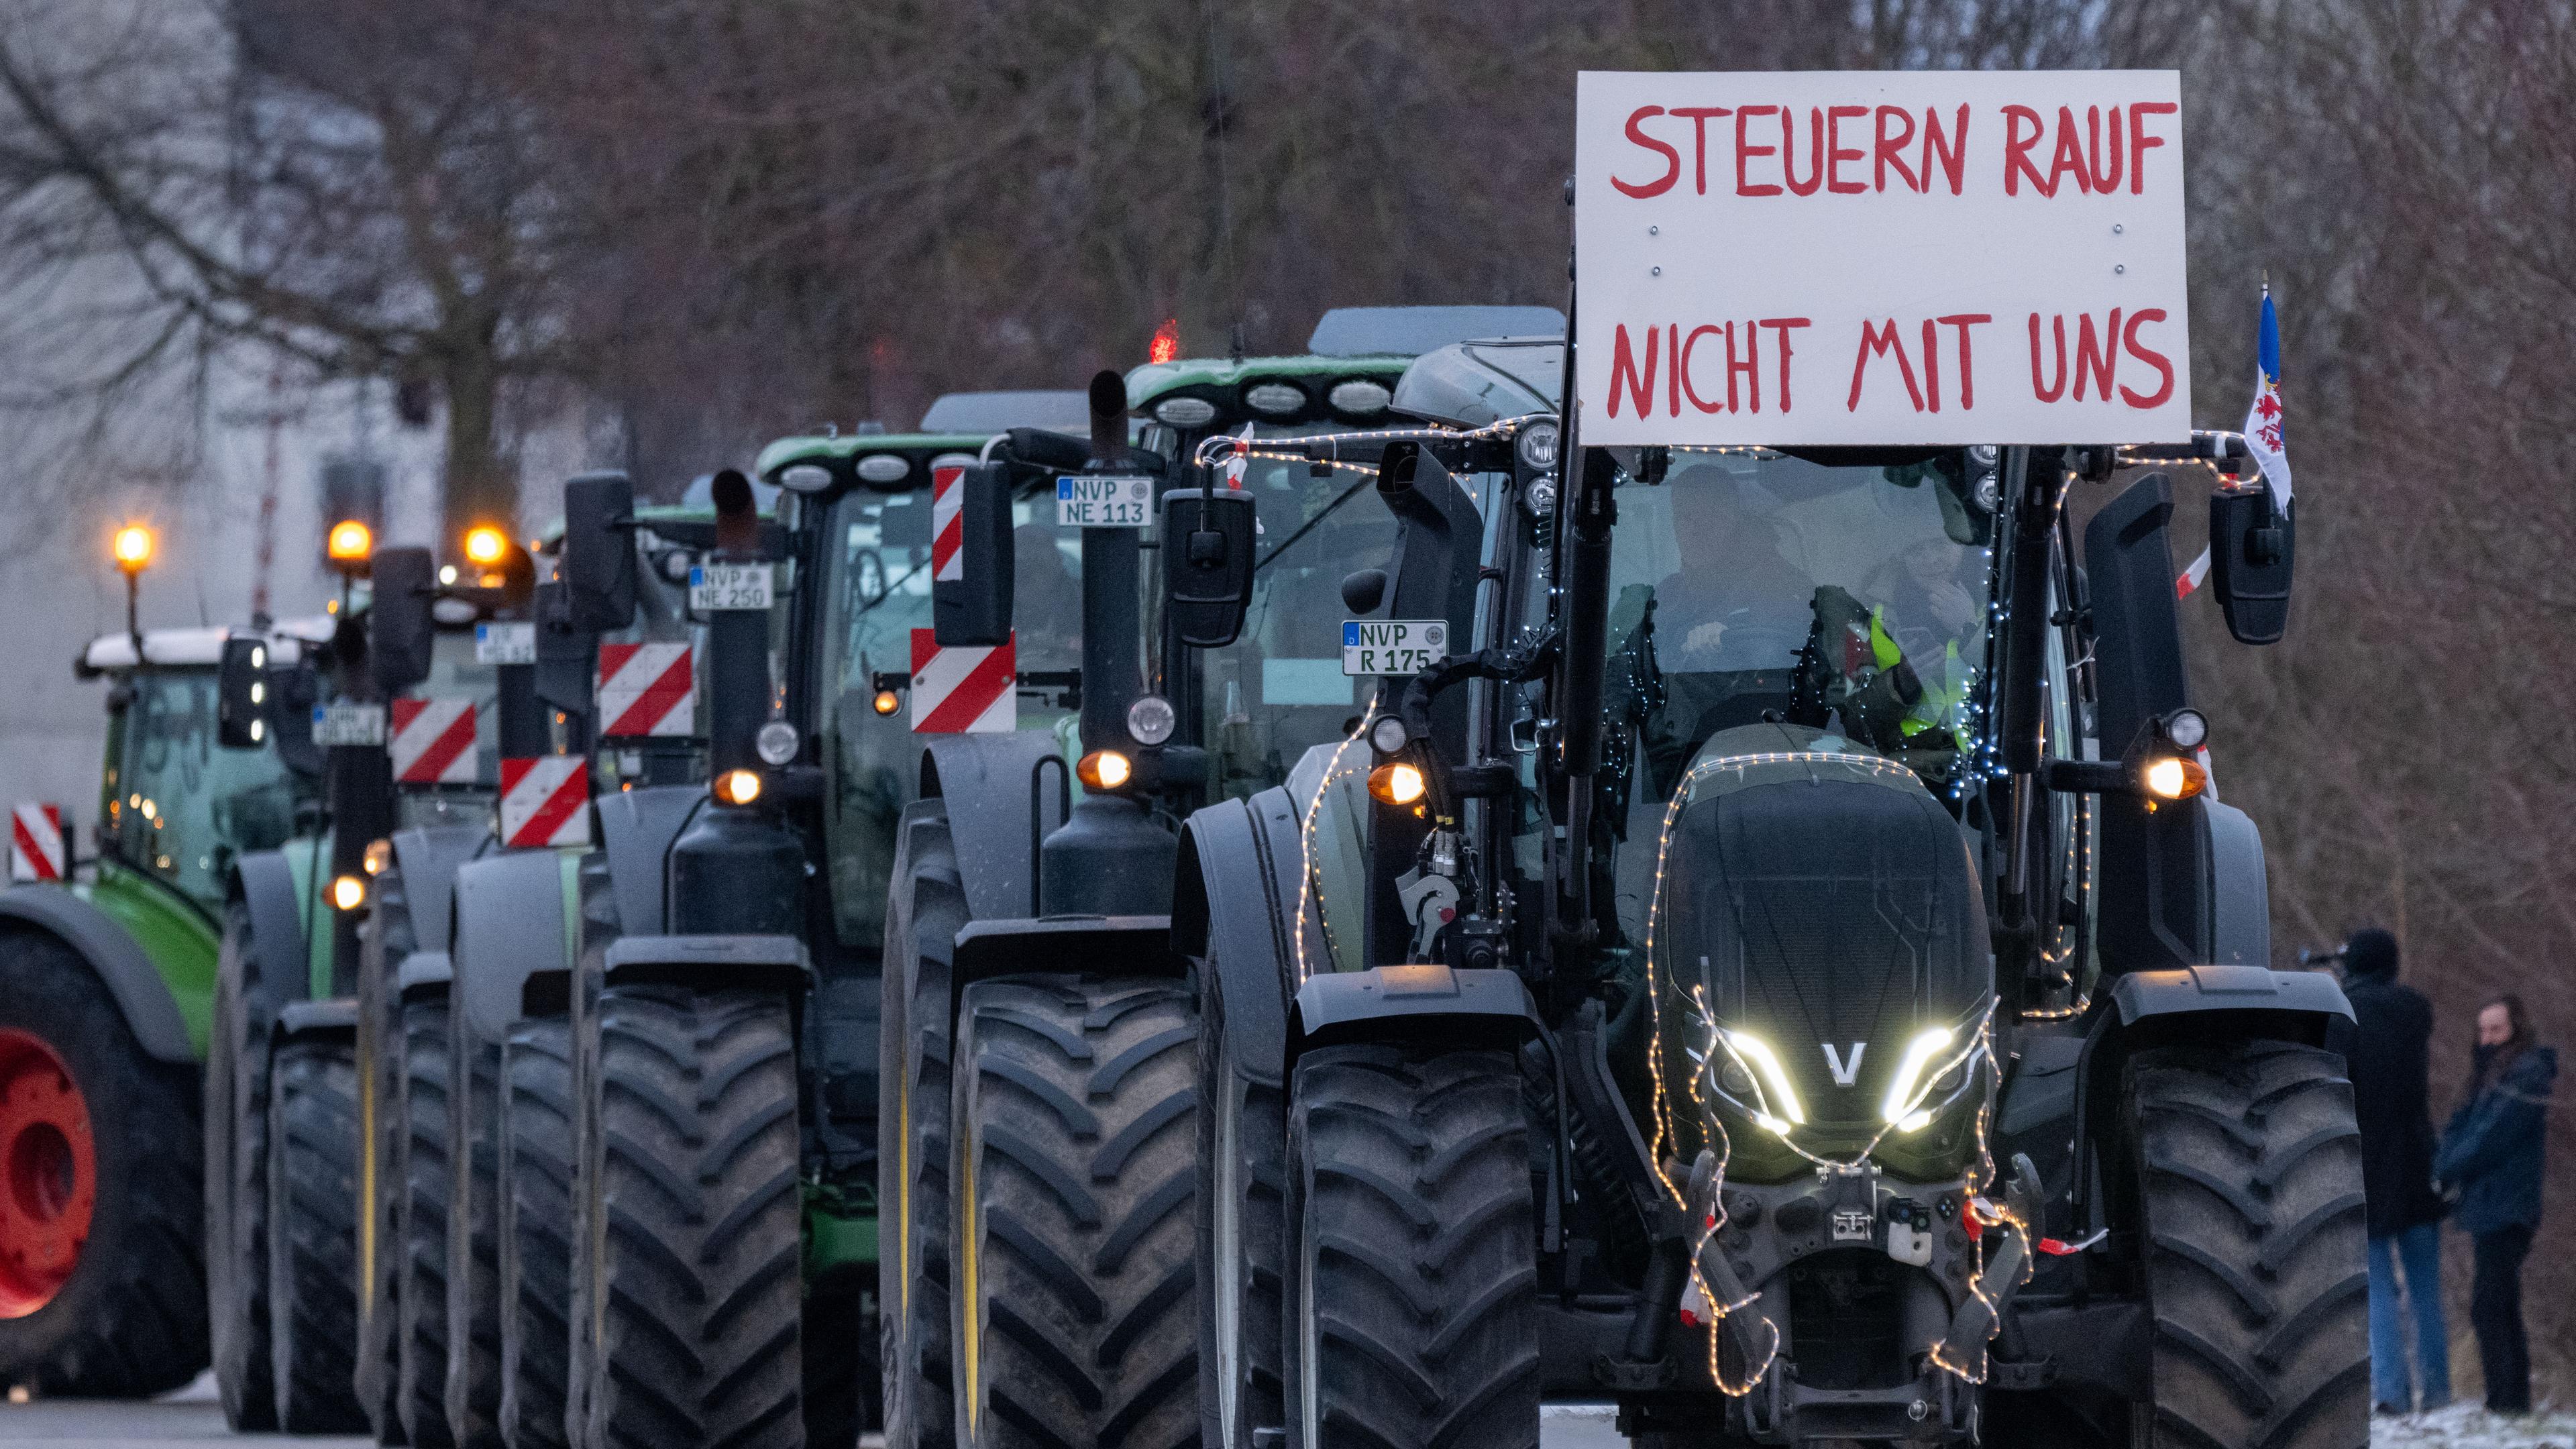 Traktoren fahren vor der Rügenbrücke auf einem Schild ist zu lesen Steuern rauf nicht mit uns